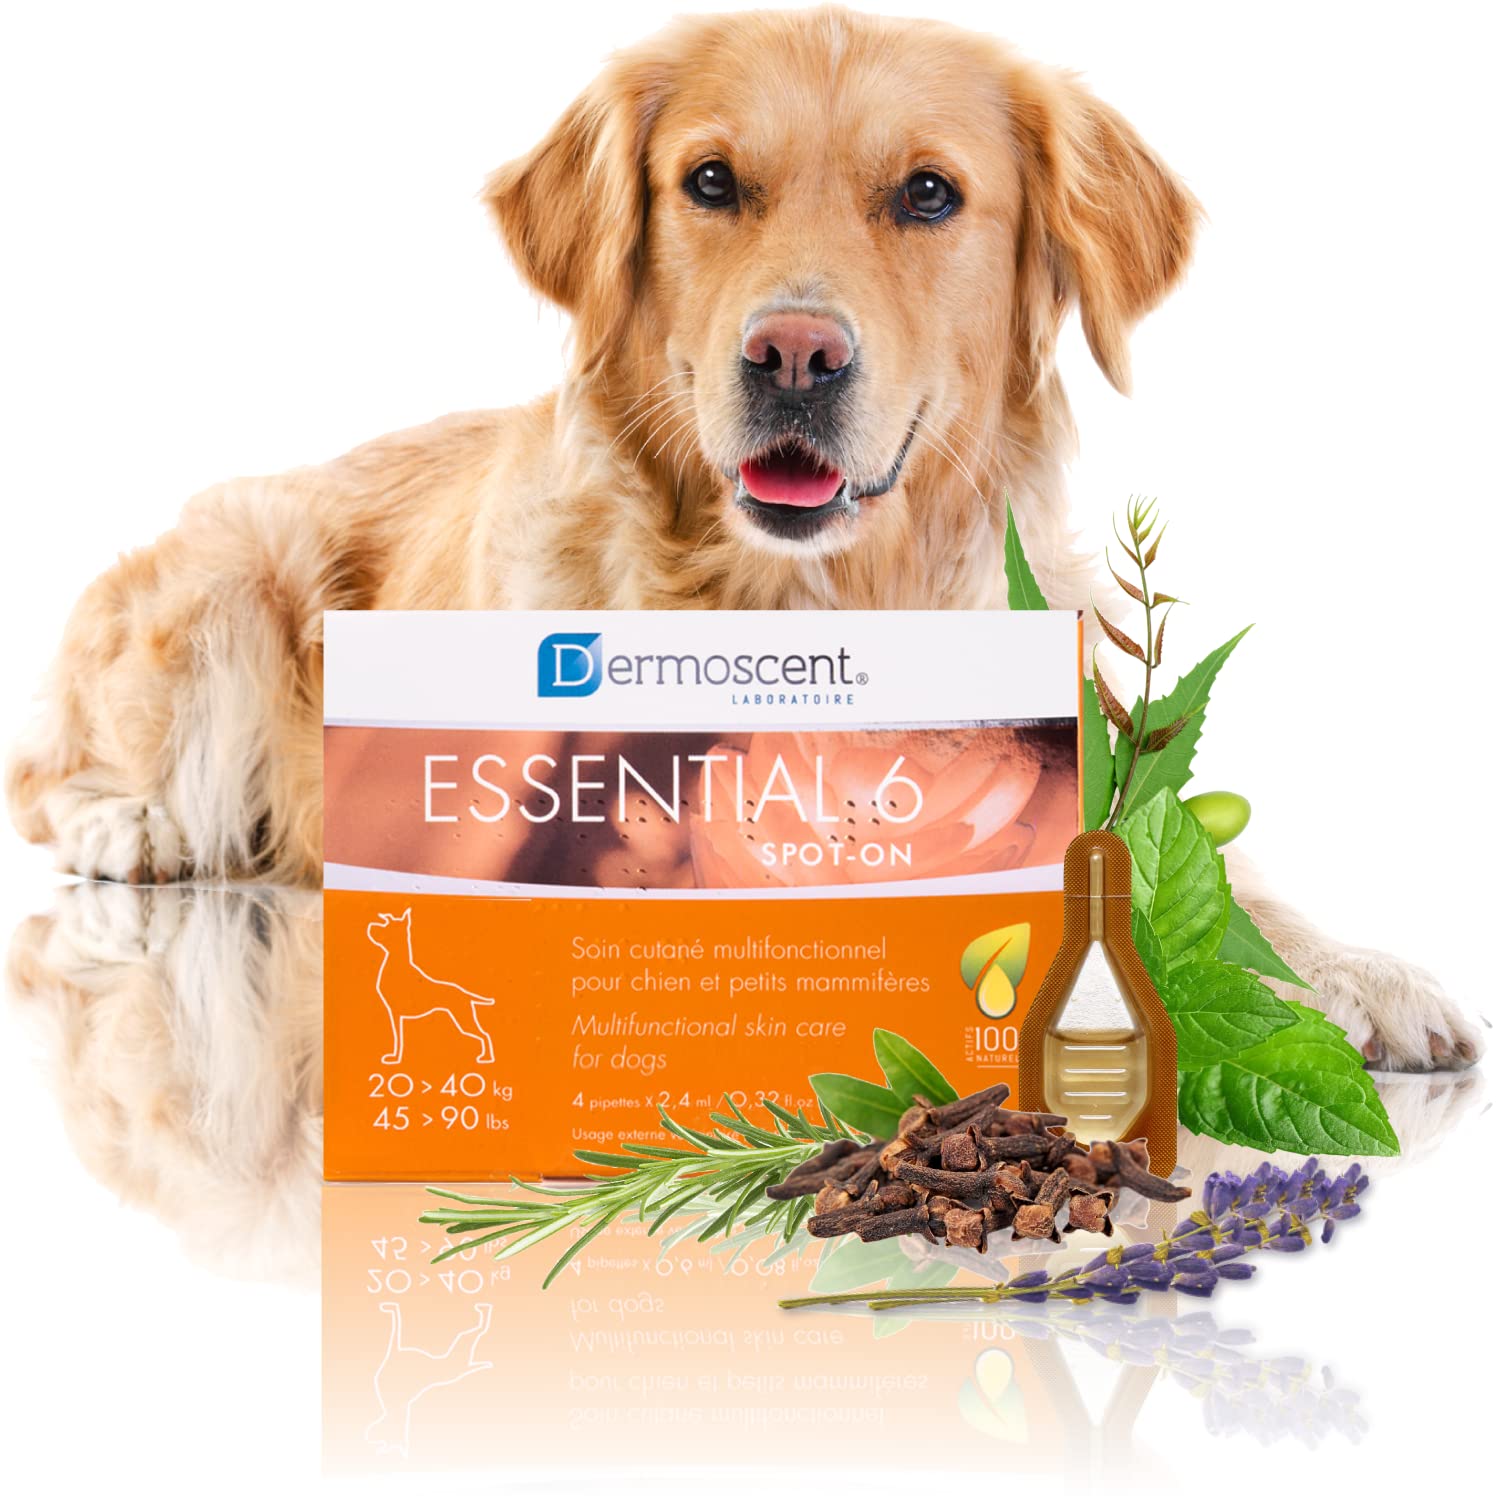 Innovative Hautpflegelösung für Hunde und kleine Haustiere | Feuchtigkeitsspendend, glänzend, kontrolliert Haarausfall, reduziert Gerüche und schützt mit natürlichen Inhaltsstoffen | 20-40 kg